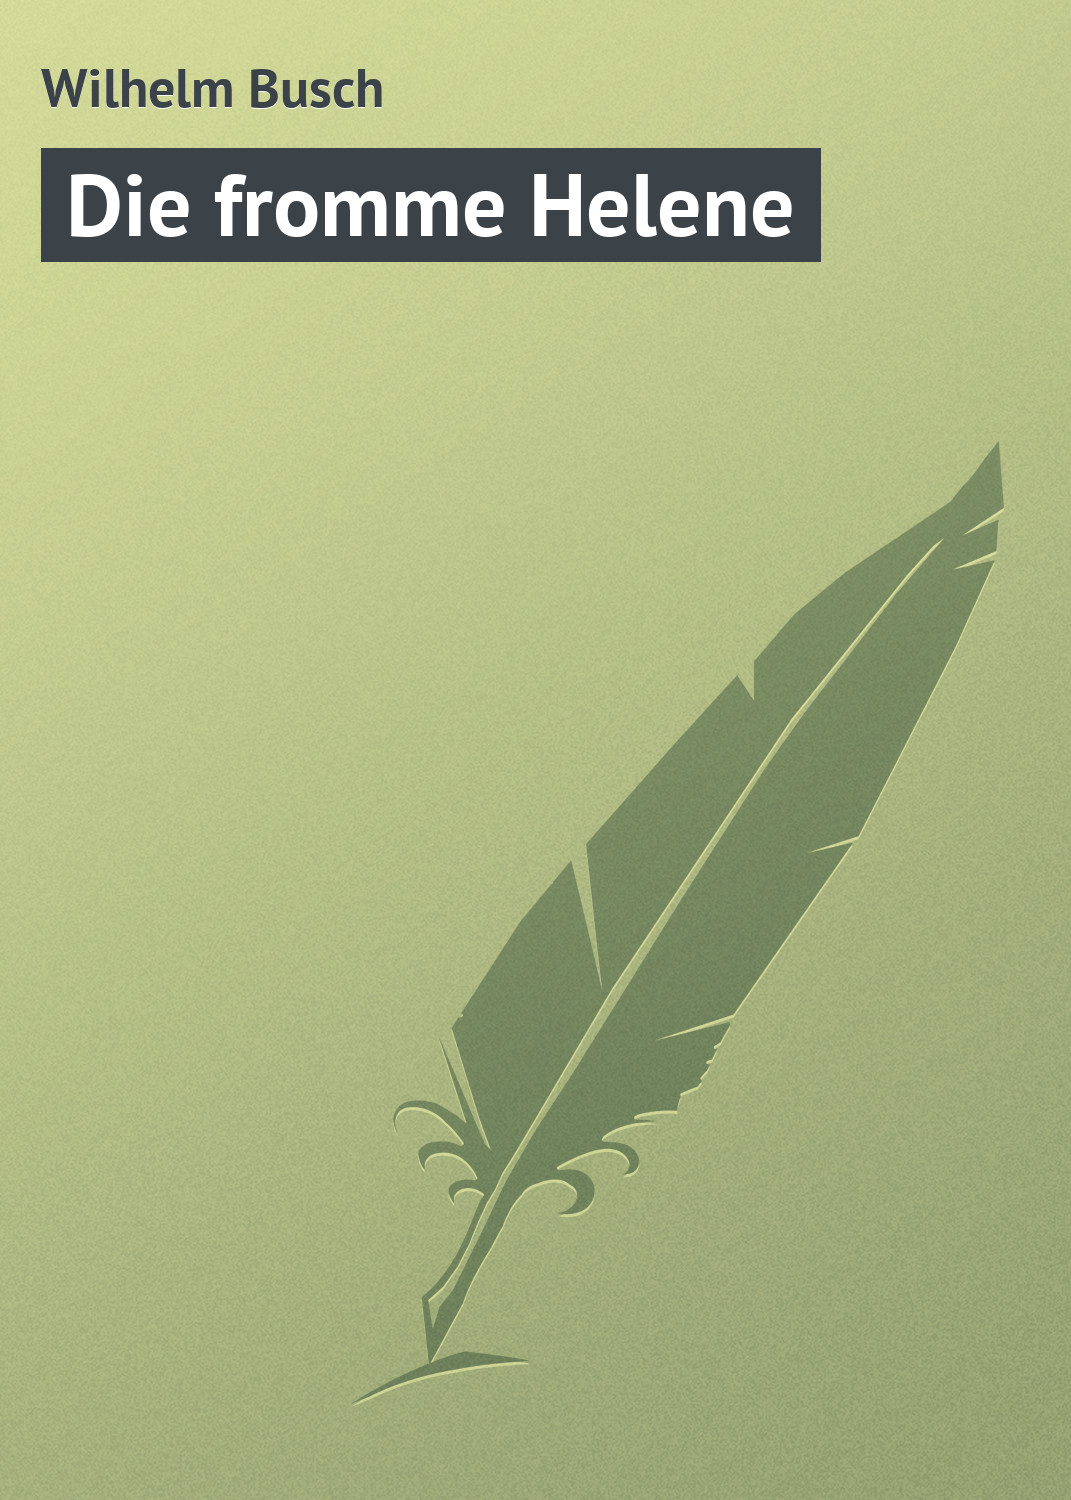 Книга Die fromme Helene из серии , созданная Wilhelm Busch, может относится к жанру Поэзия. Стоимость электронной книги Die fromme Helene с идентификатором 18405408 составляет 5.99 руб.